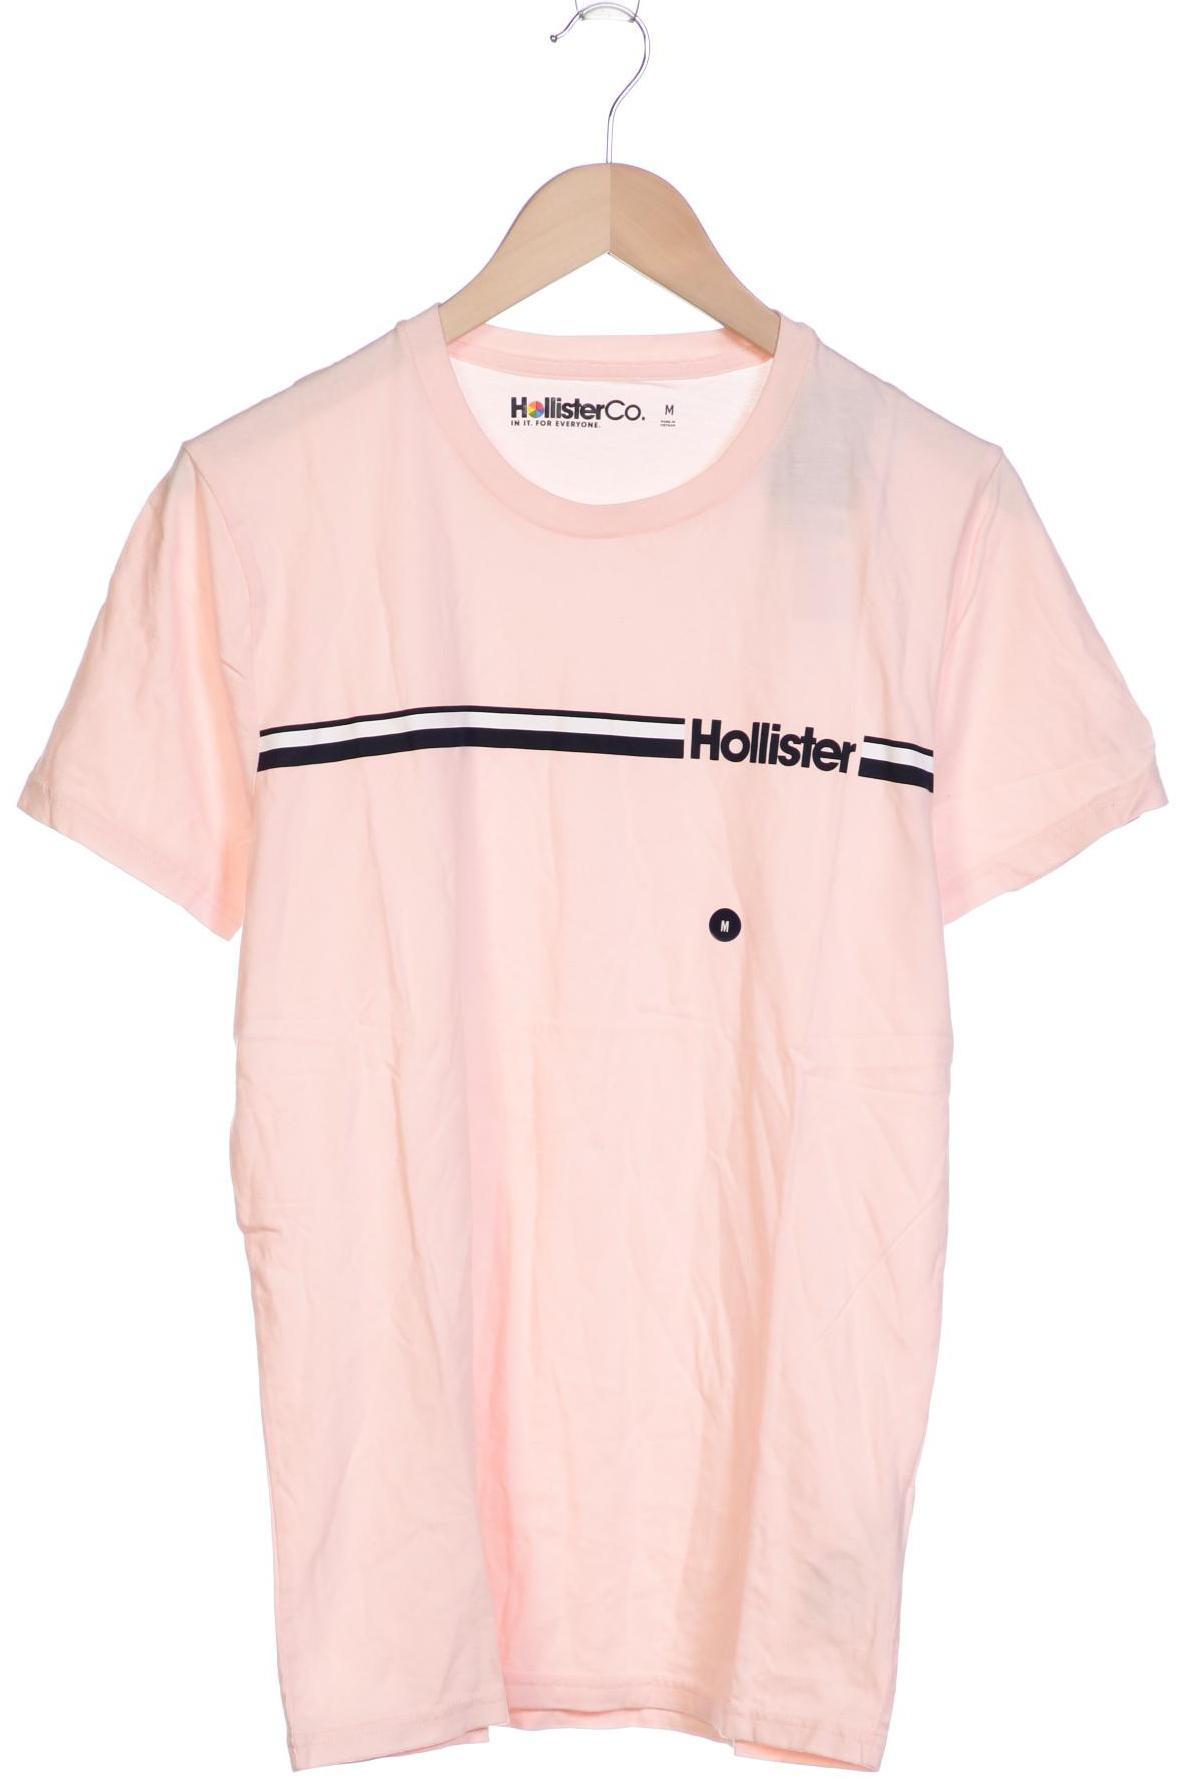 Hollister Herren T-Shirt, pink von Hollister